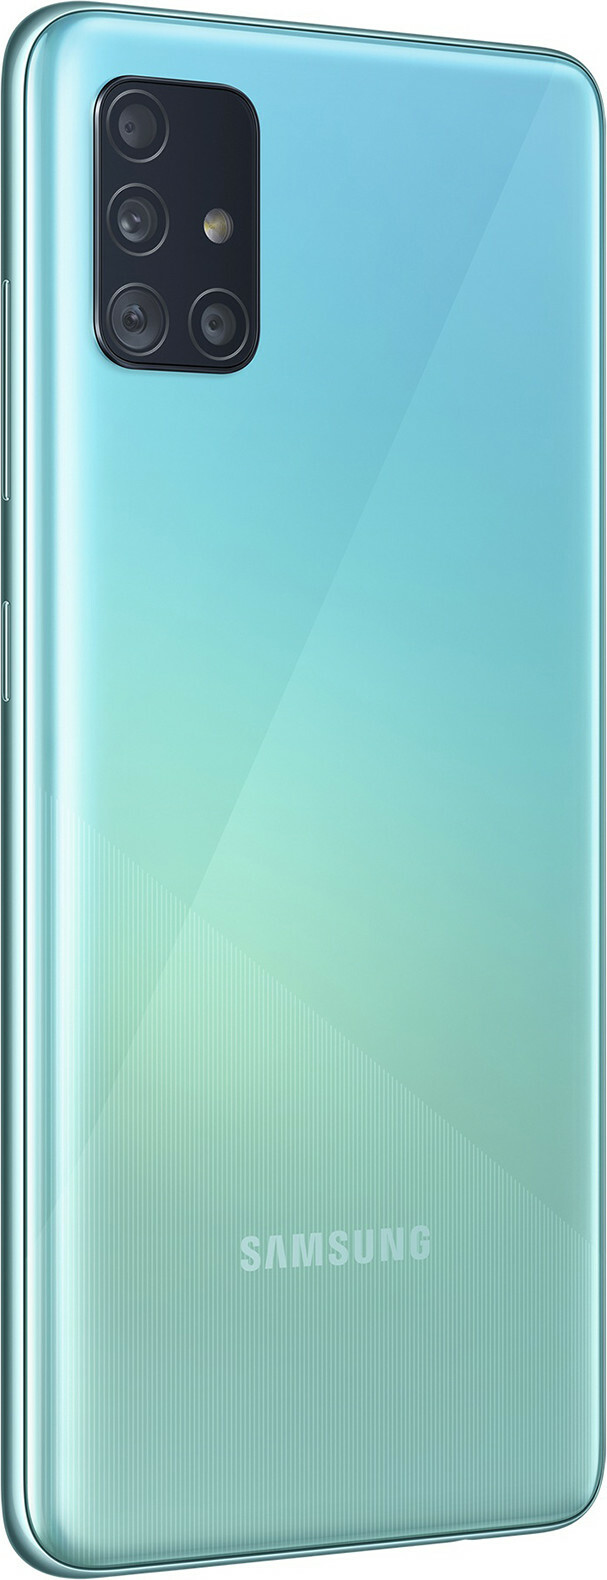 Samsung Galaxy A51 128GB (8GB RAM)